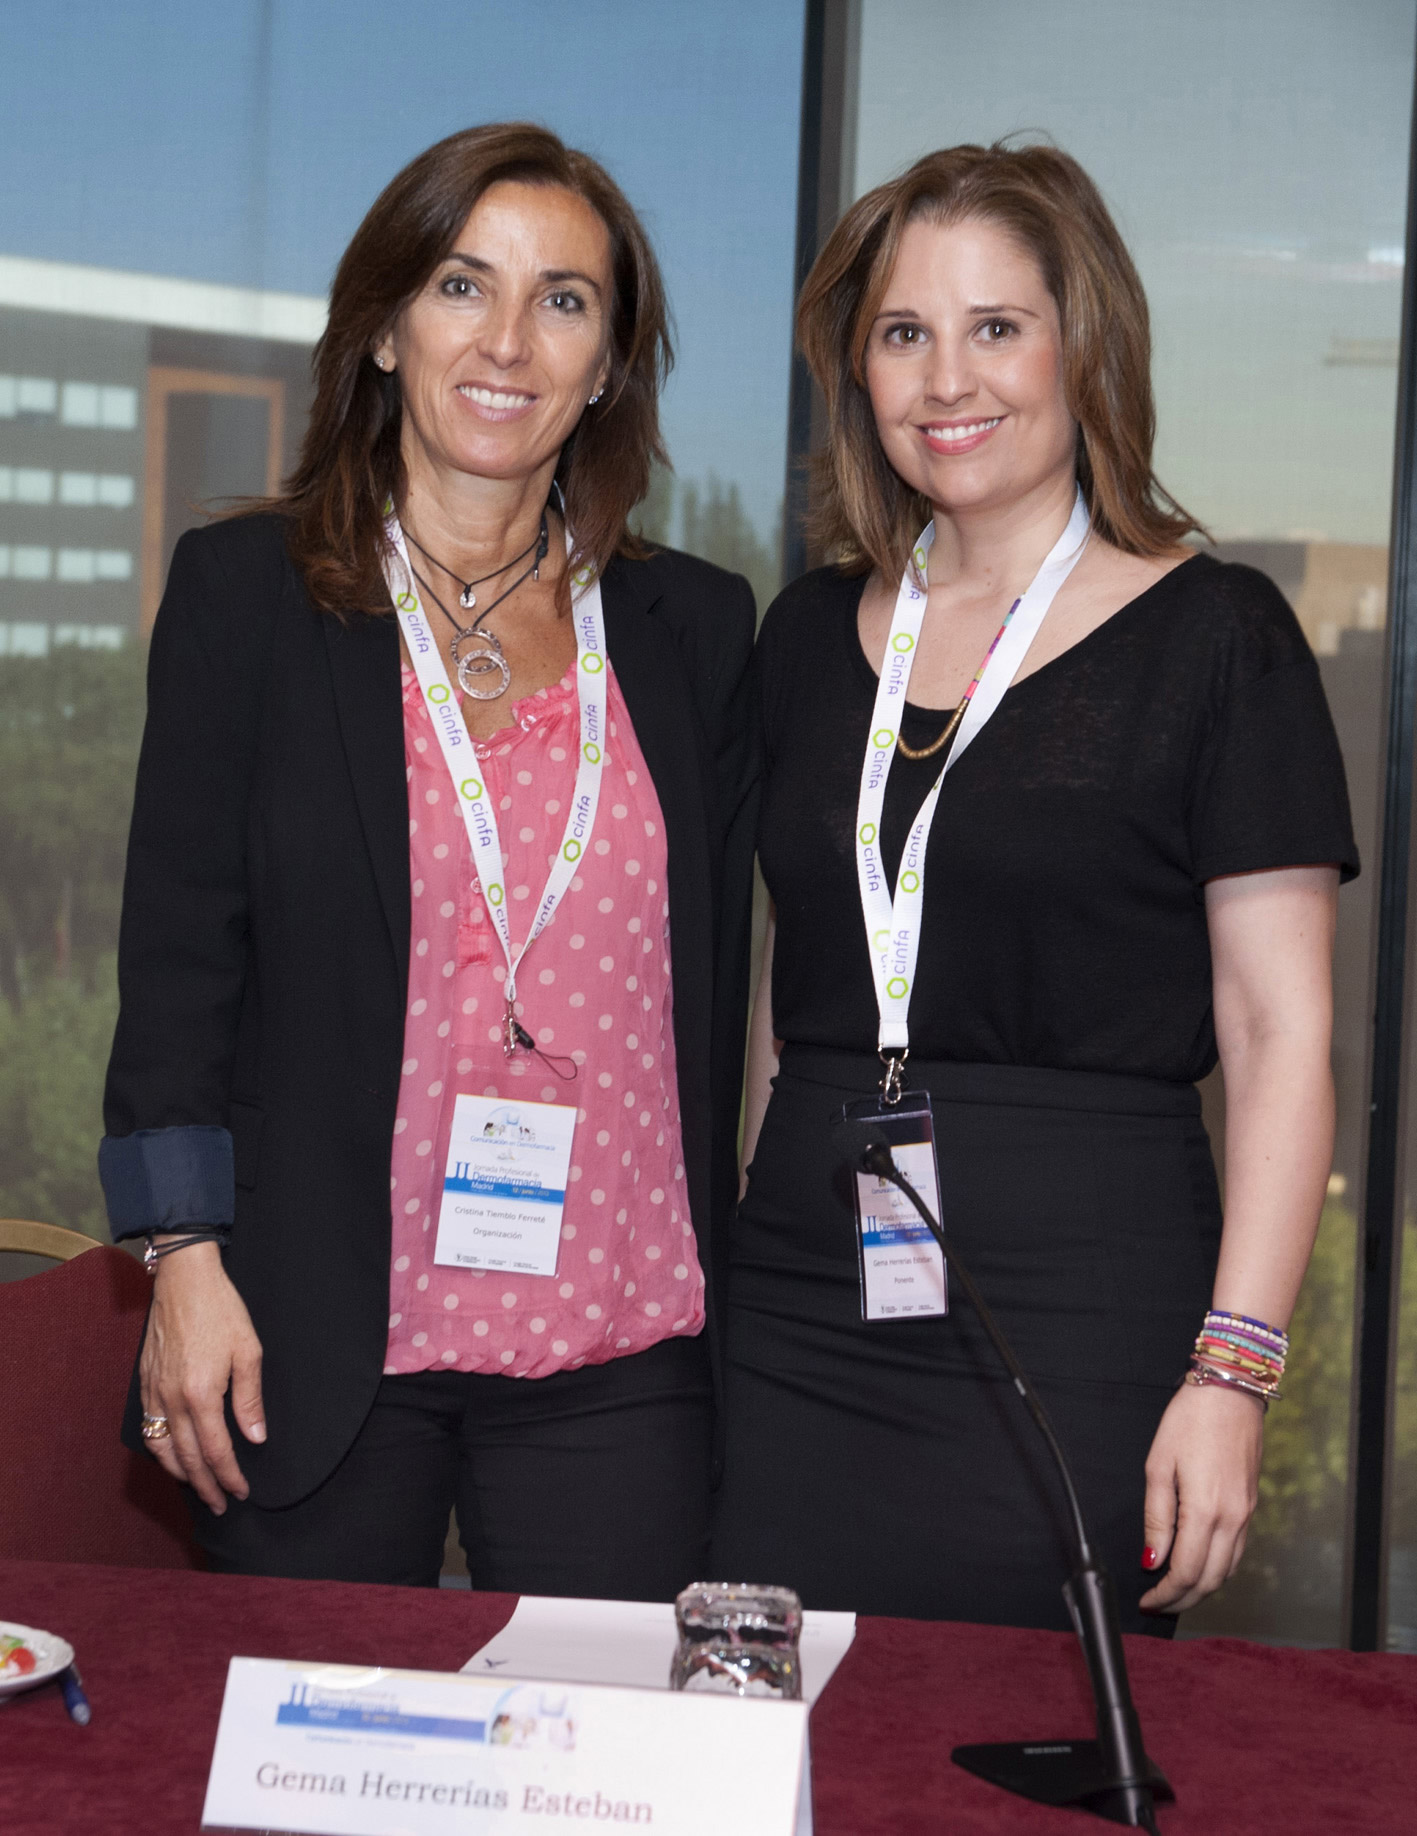 Conferencia Inaugural: Cristina Tiemblo Ferreté y Gema Herrerias Esteban